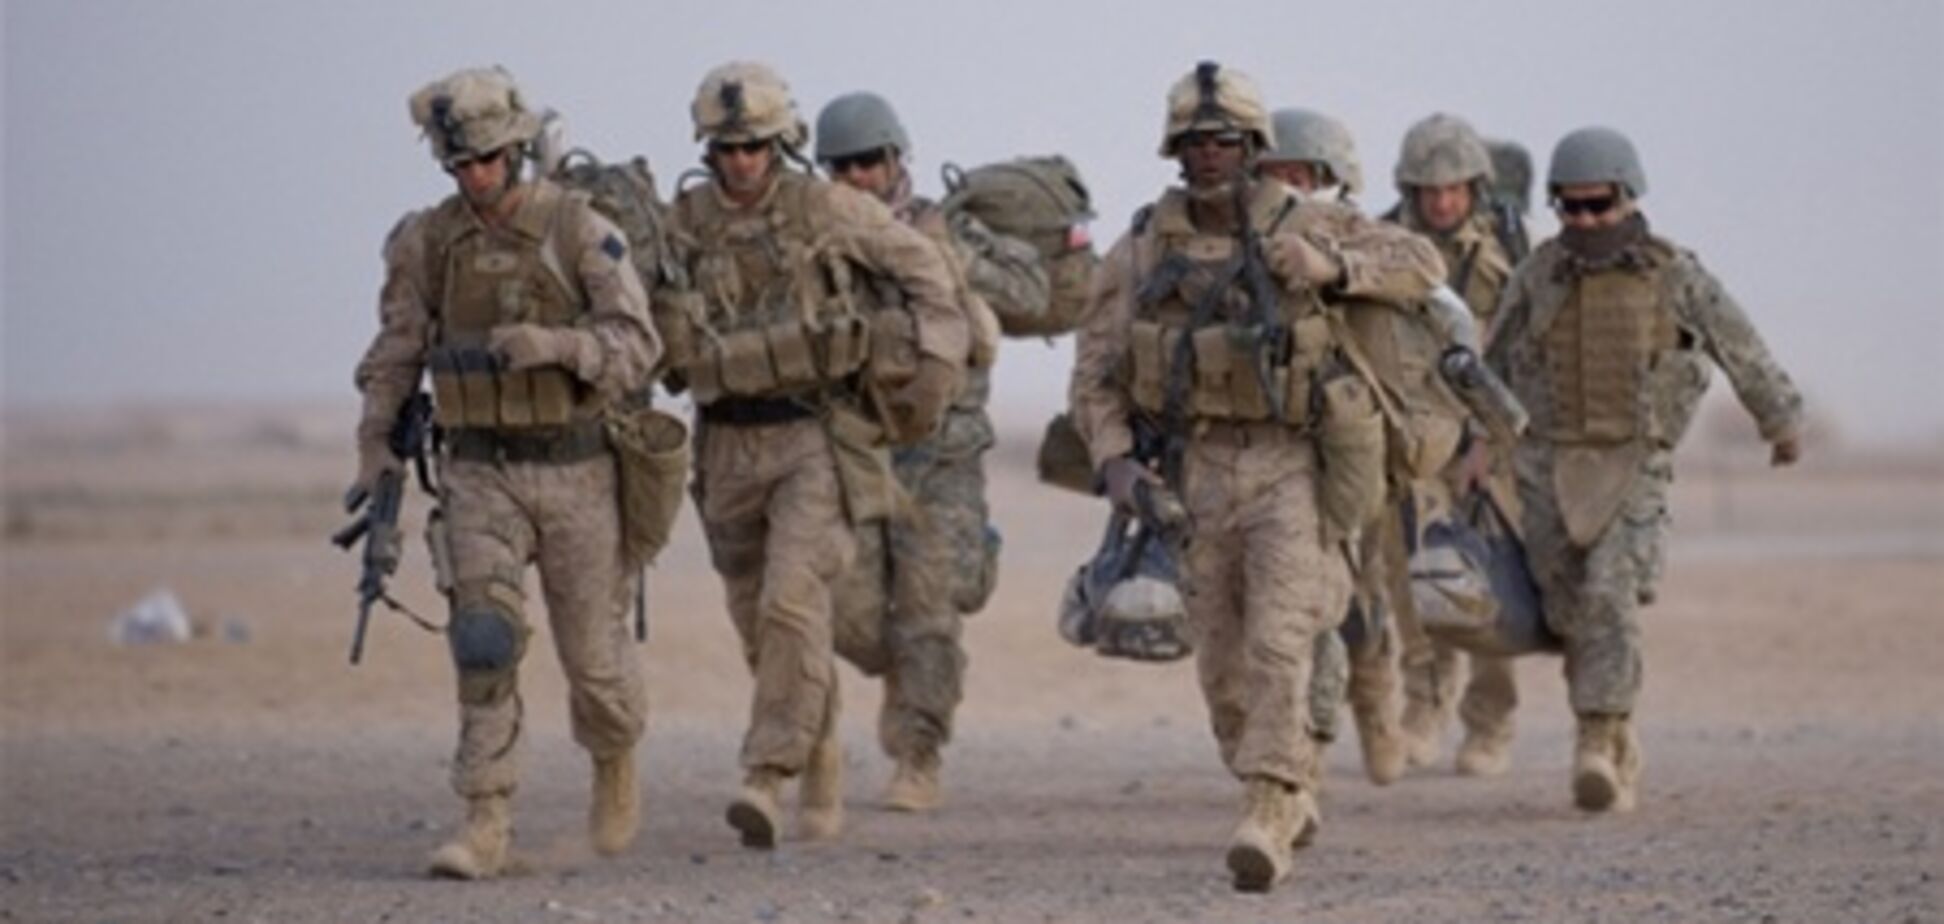 Америка почала виведення своїх військ з Афганістану